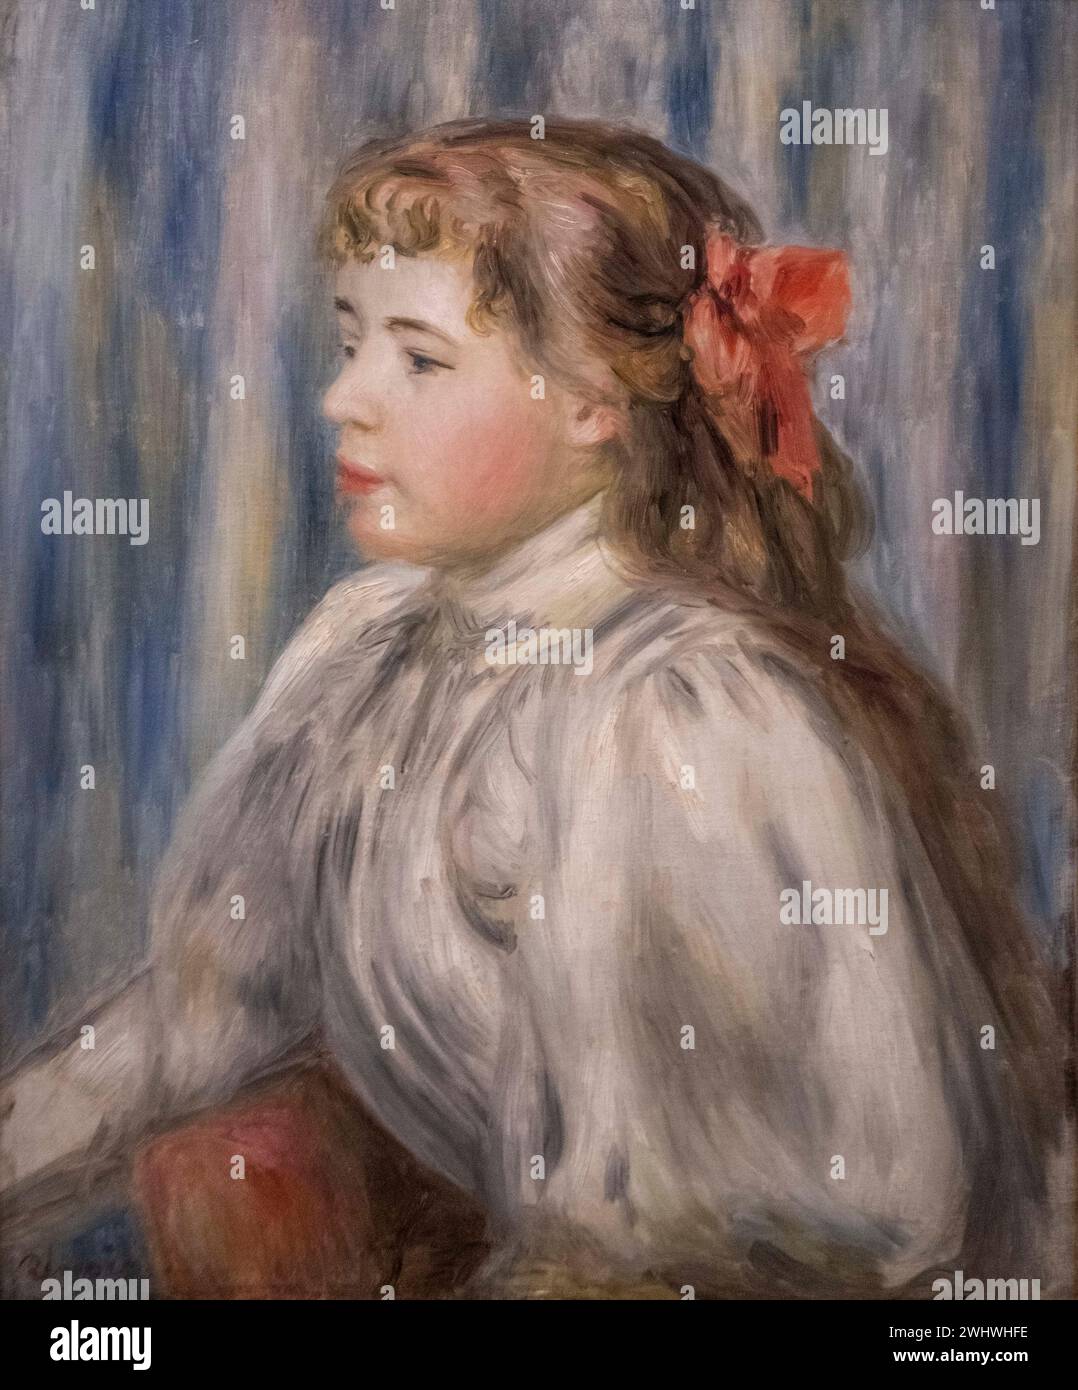 Auguste Renoir: 'Busto de una chica joven' (1895) Foto de stock